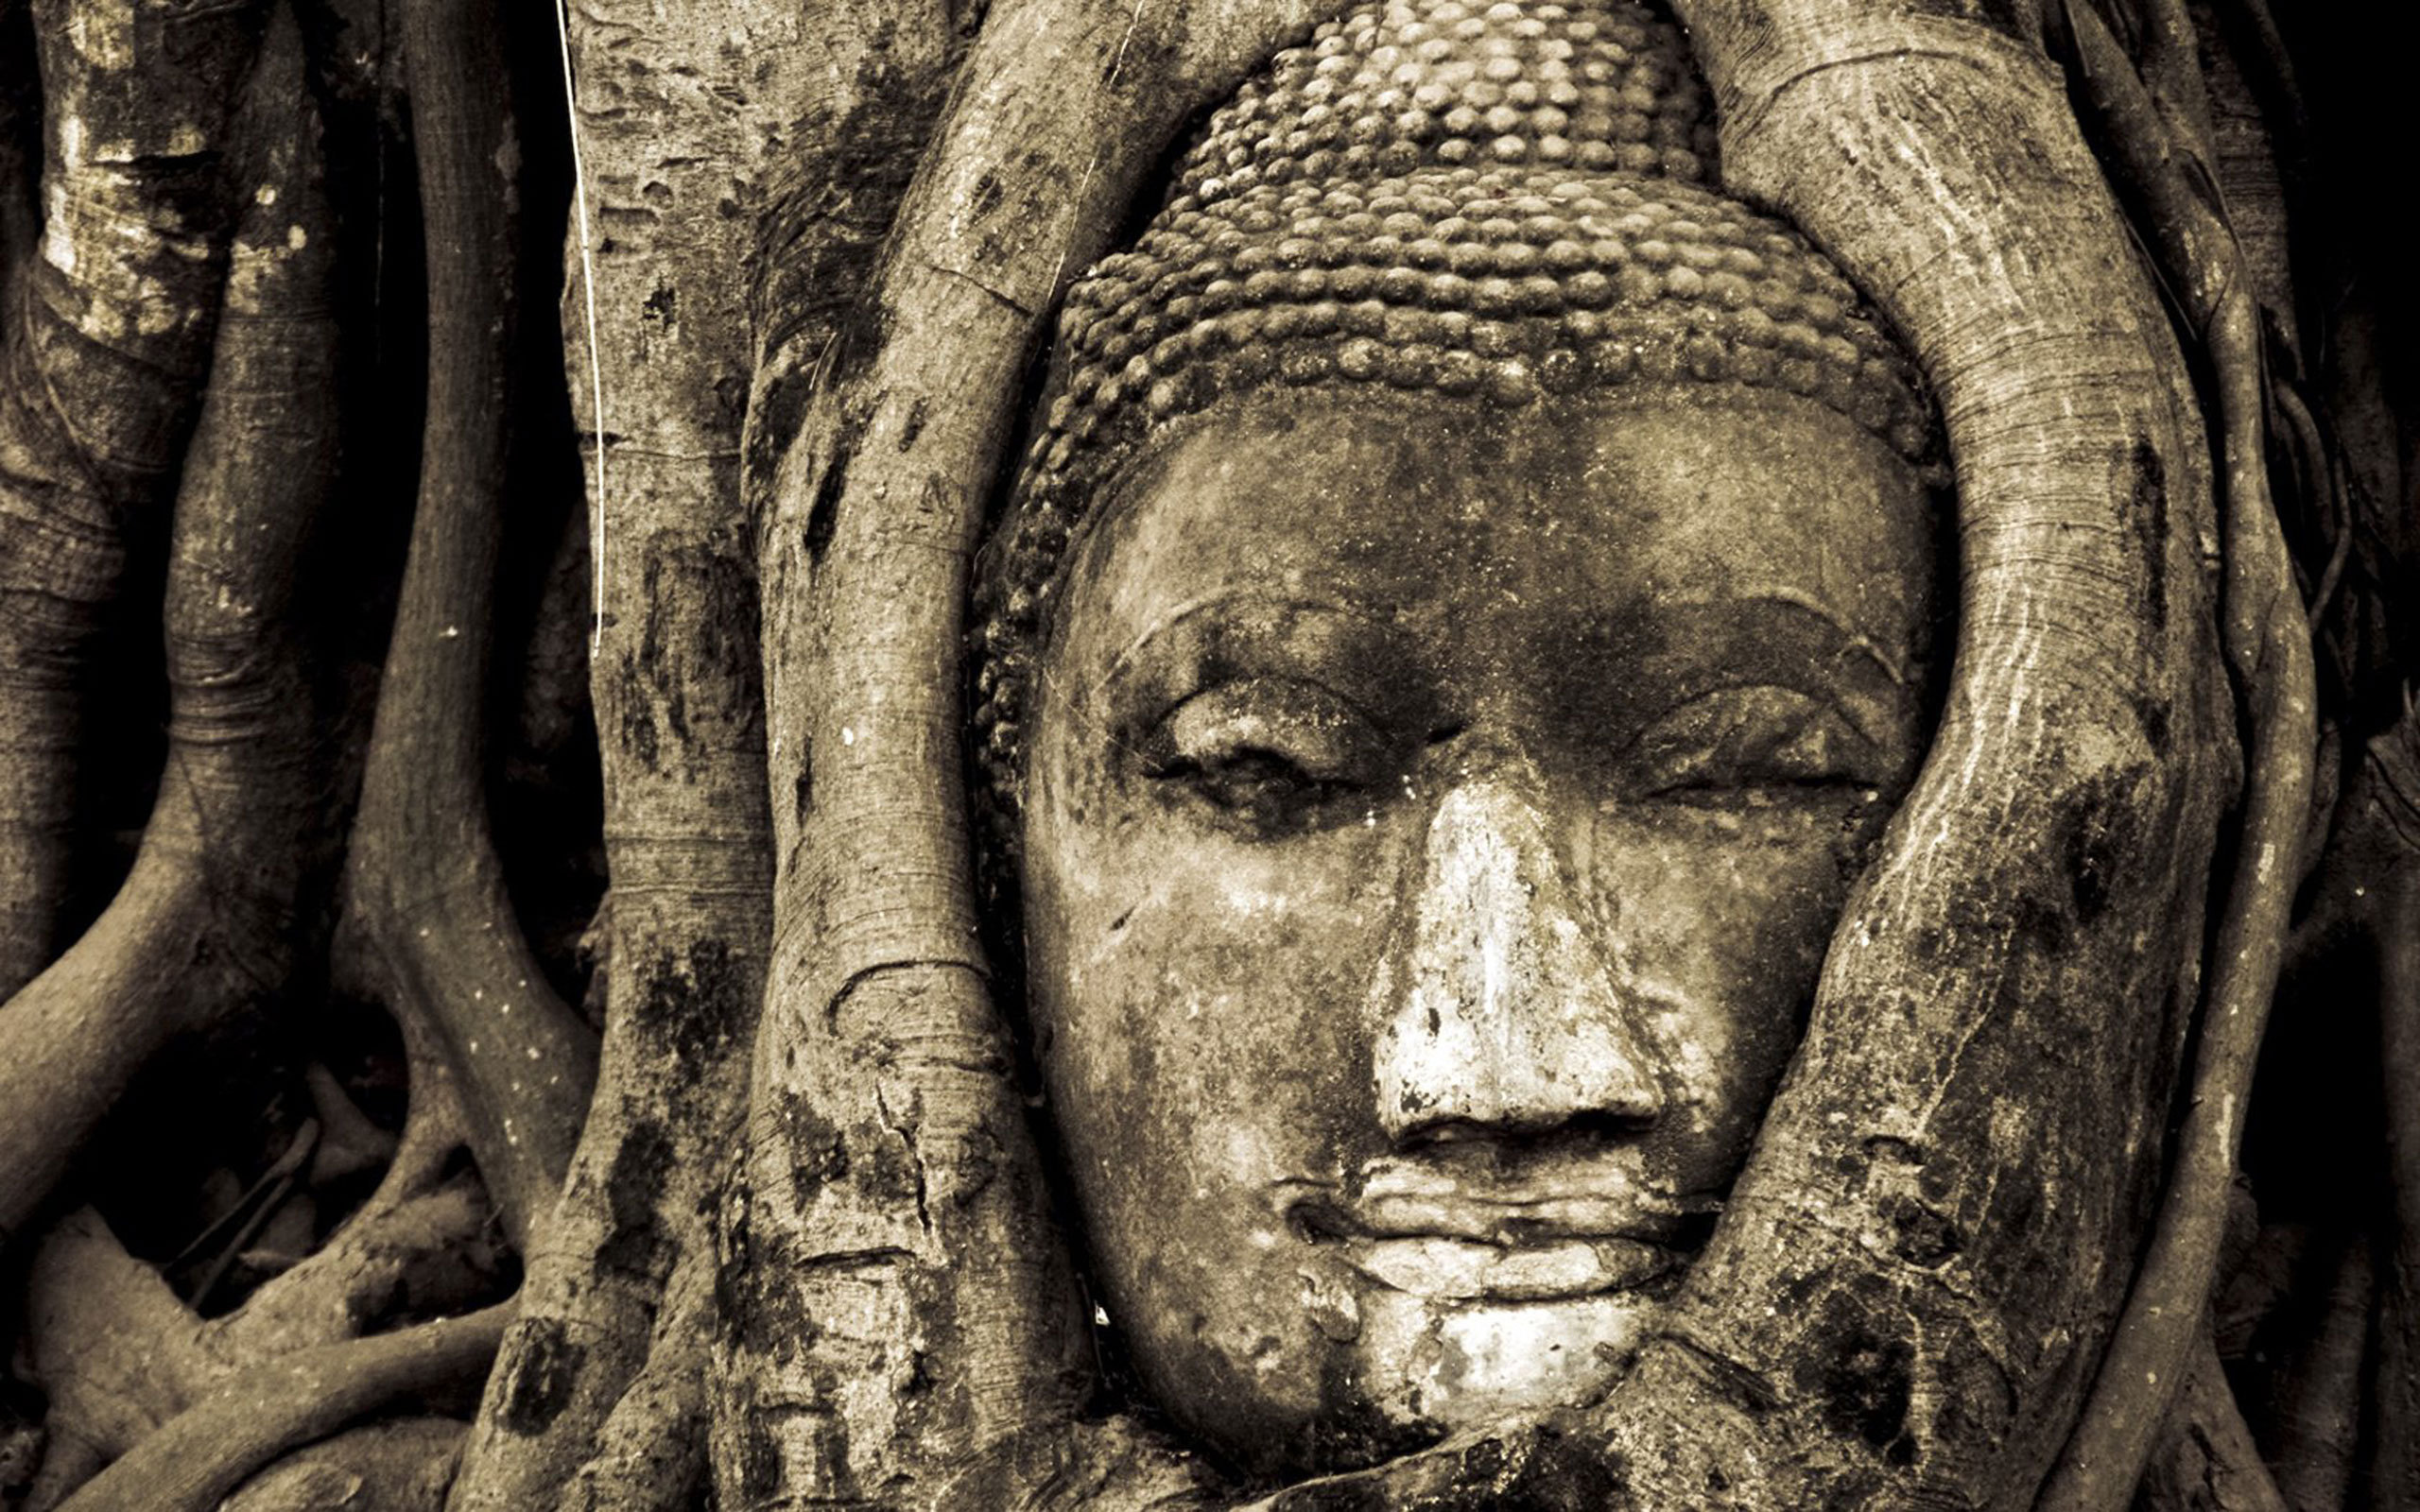 Лицо Будды в дереве